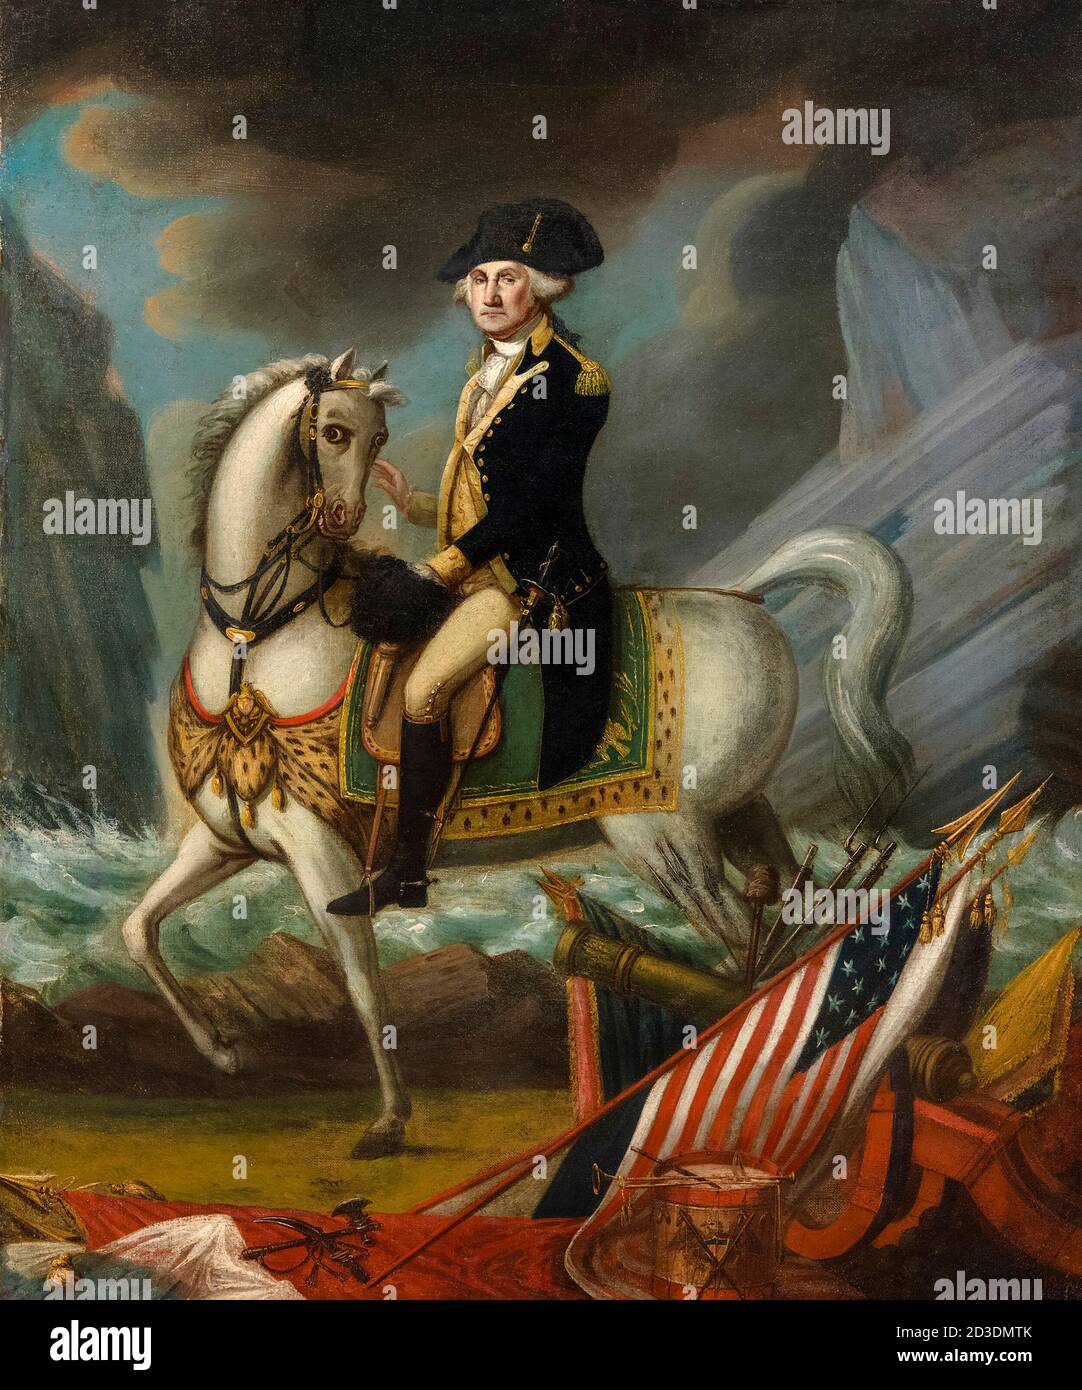 George Washington (1732-1799), erster Präsident der Vereinigten Staaten, Reitportrait von William Clarke, 1800 Stockfoto